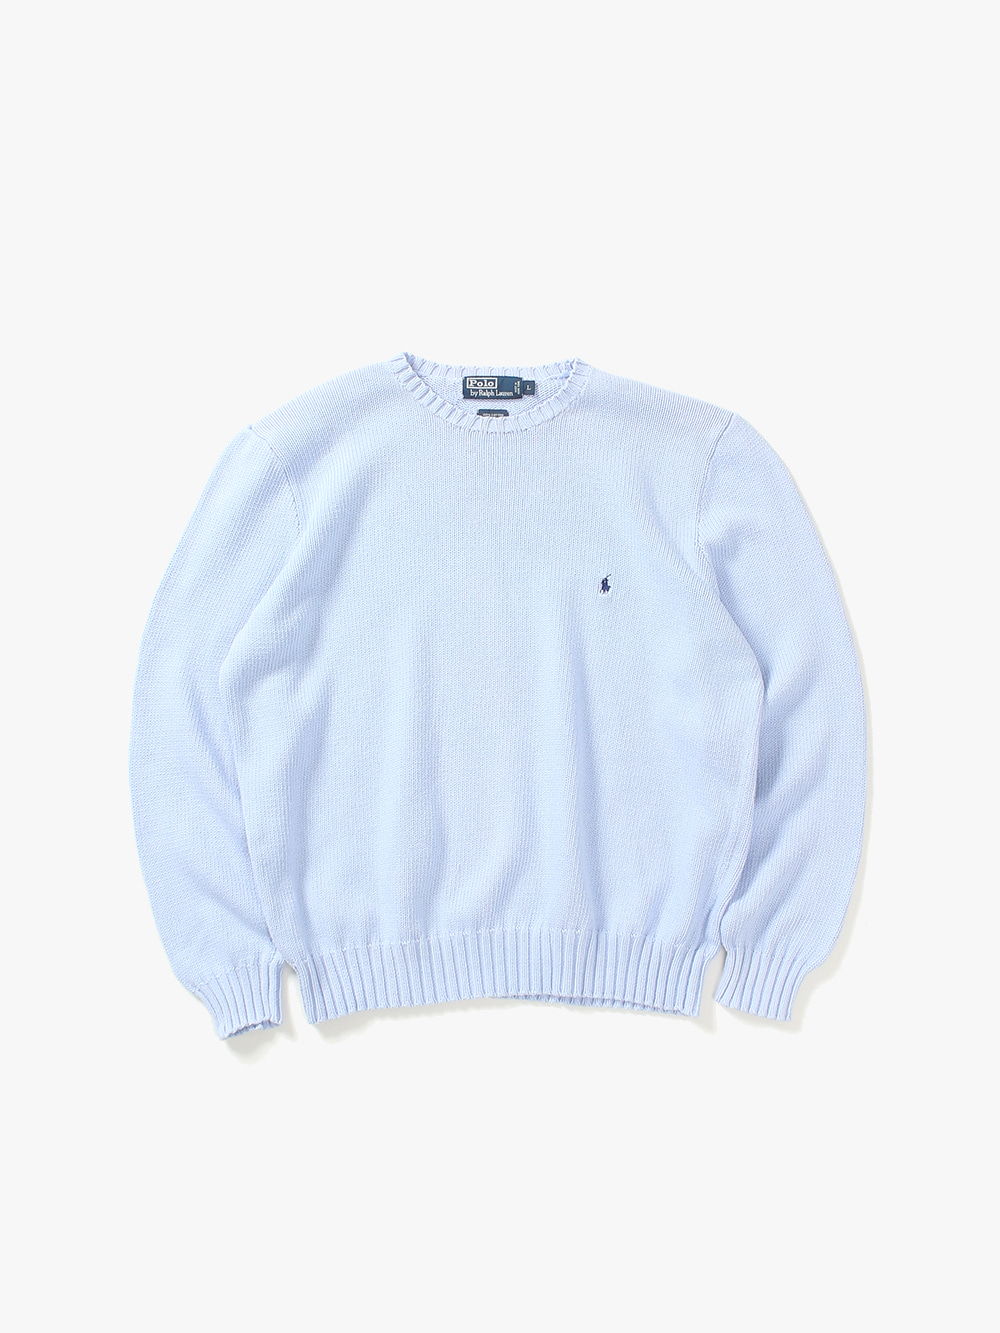 [ L ] Polo Ralph Lauren Sweater (6361)